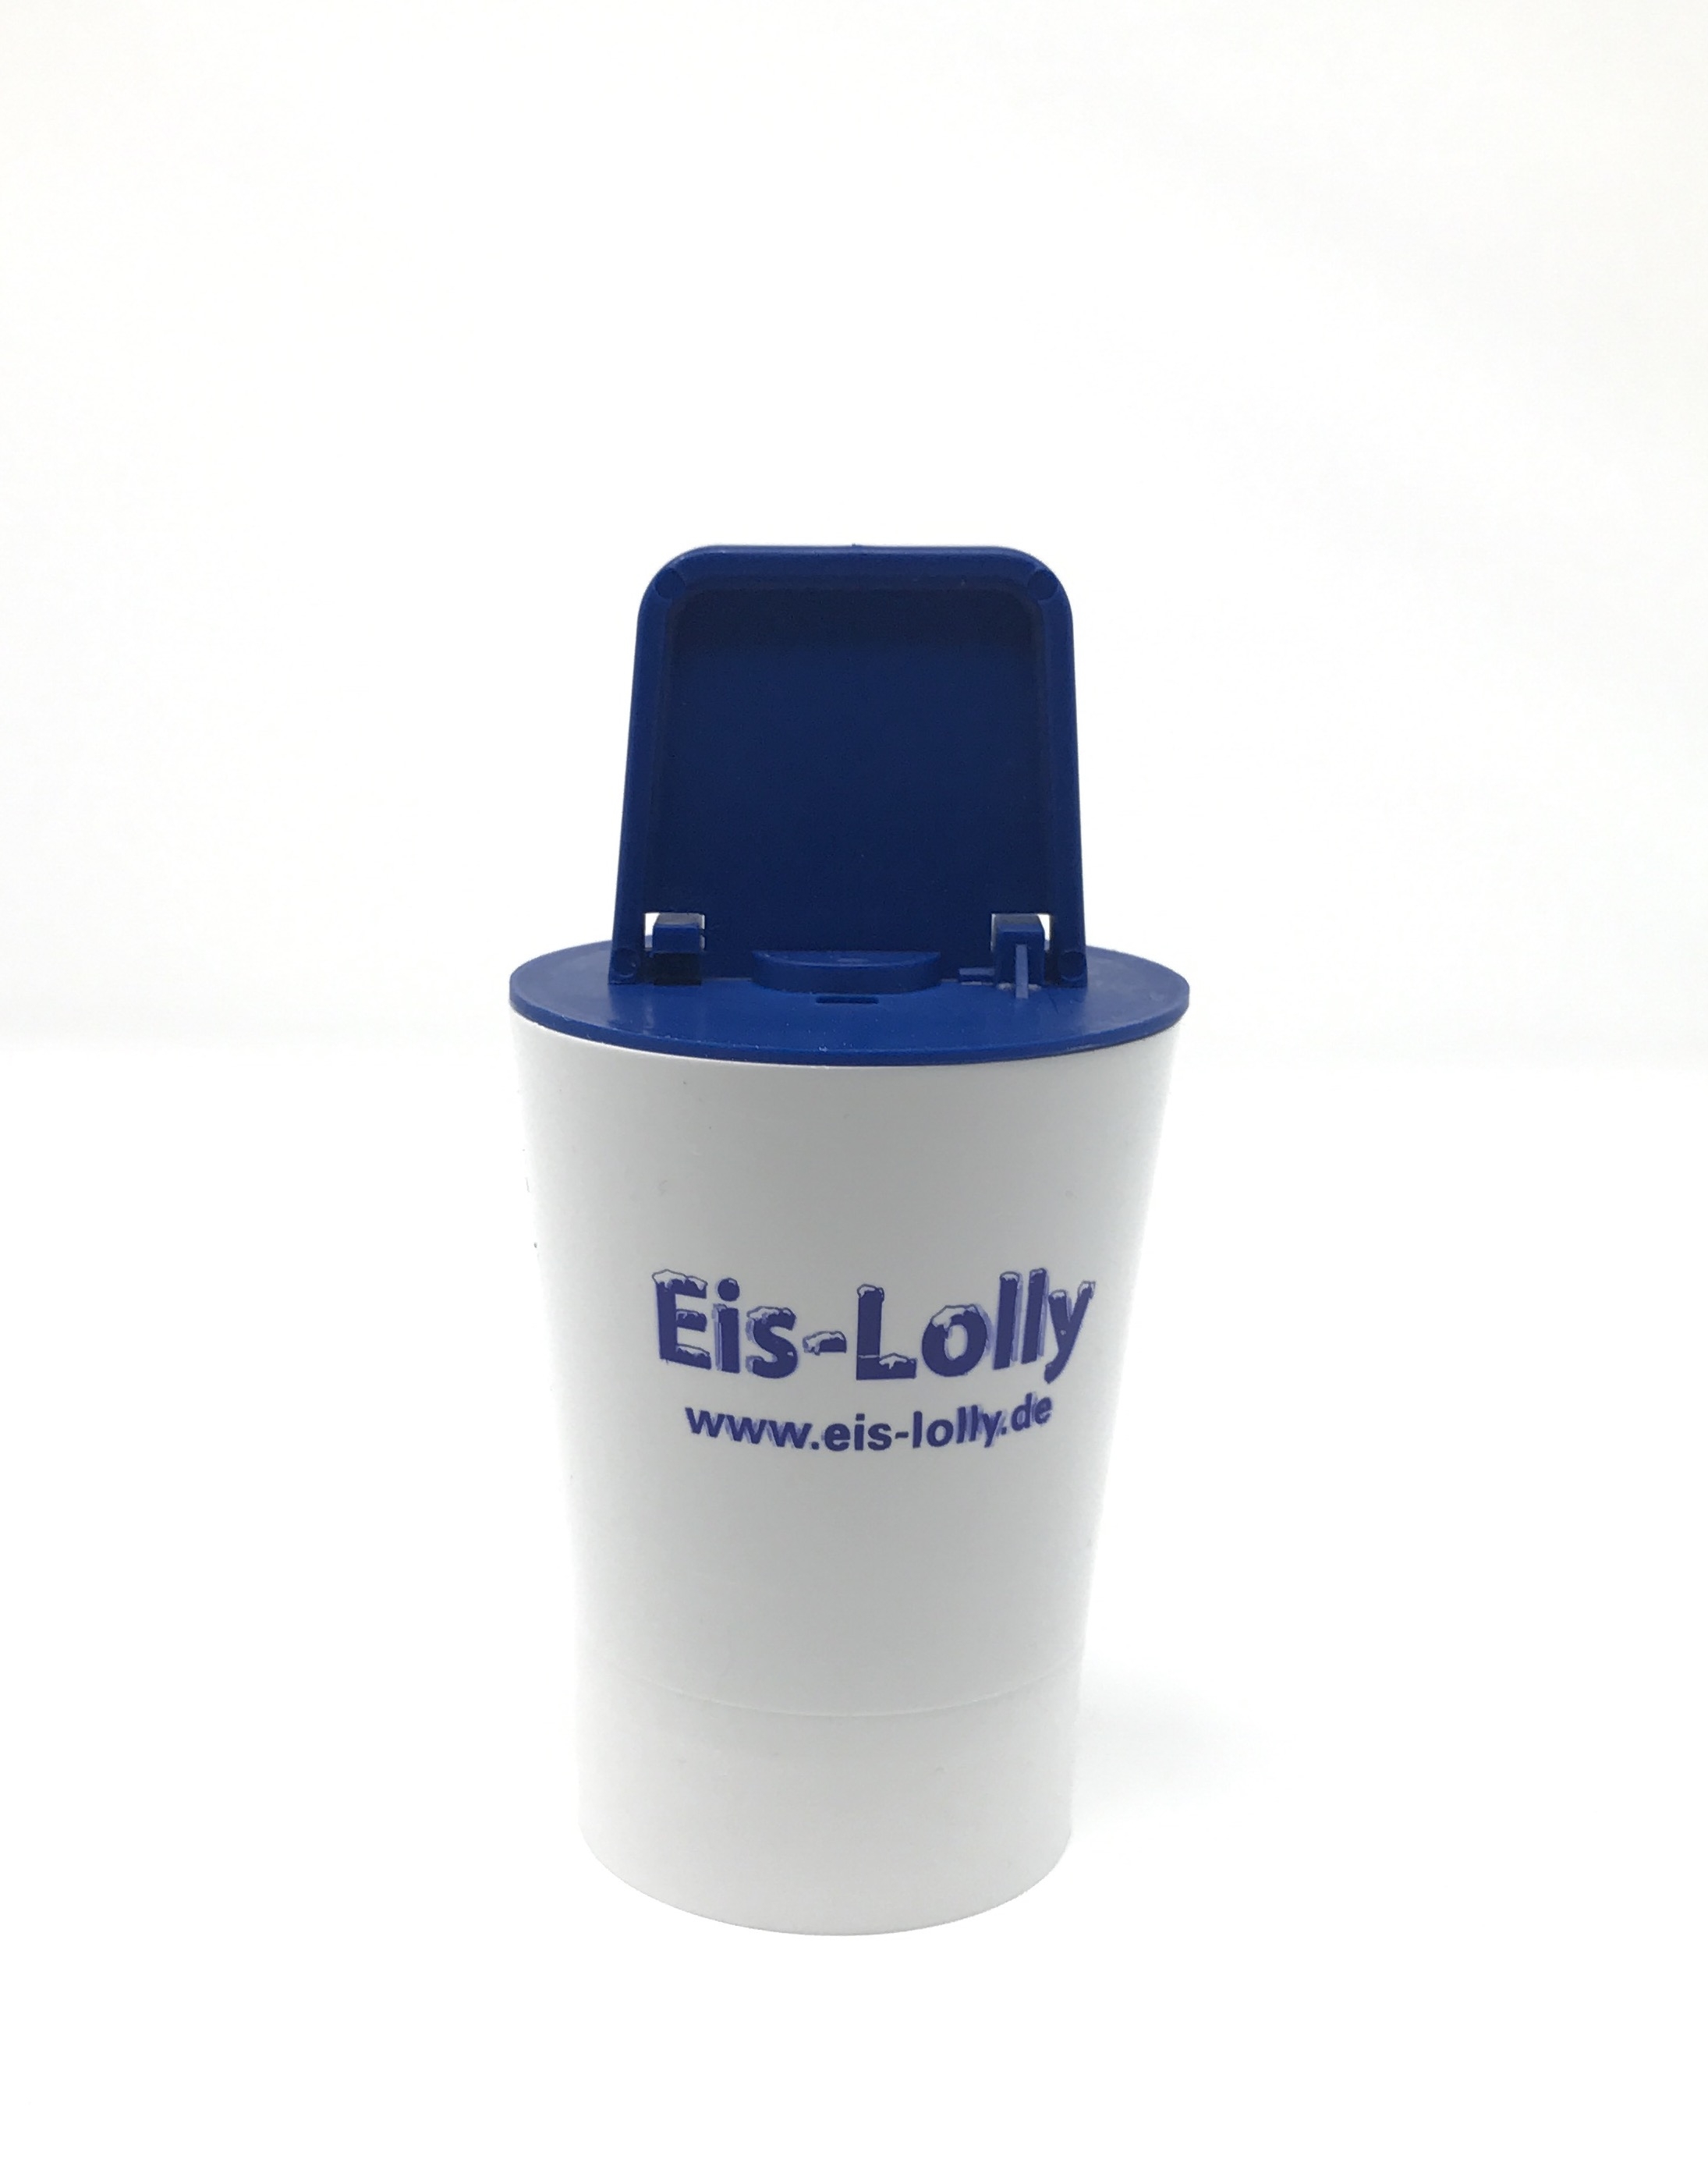 Eis-Lolly